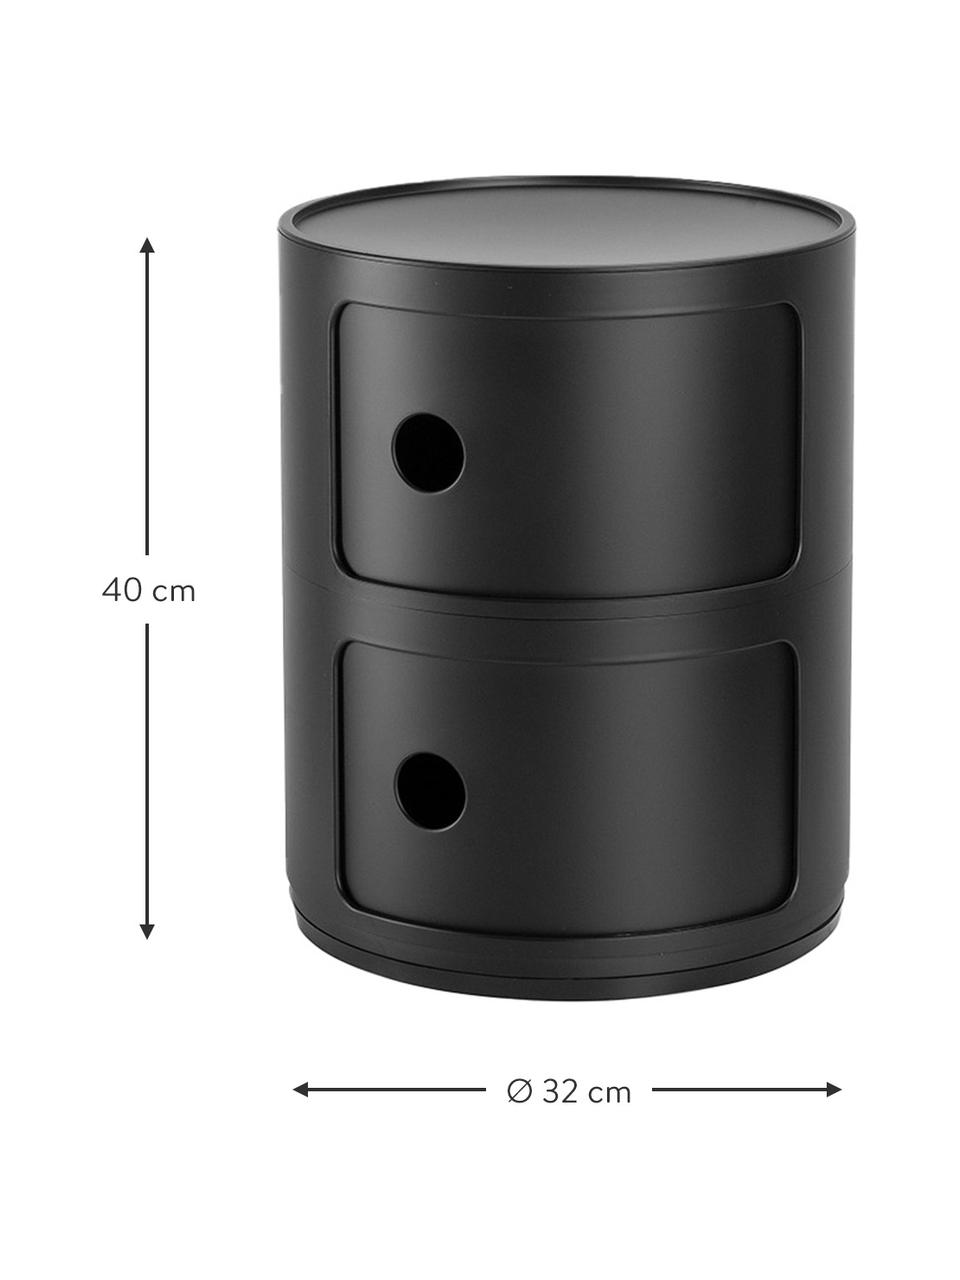 Design Container Componibili 2 Modules in Schwarz, Thermoplastisches Technopolymer aus recyceltem Industrieausschuss, Greenguard-zertifiziert, Schwarz, Ø 32 x H 40 cm